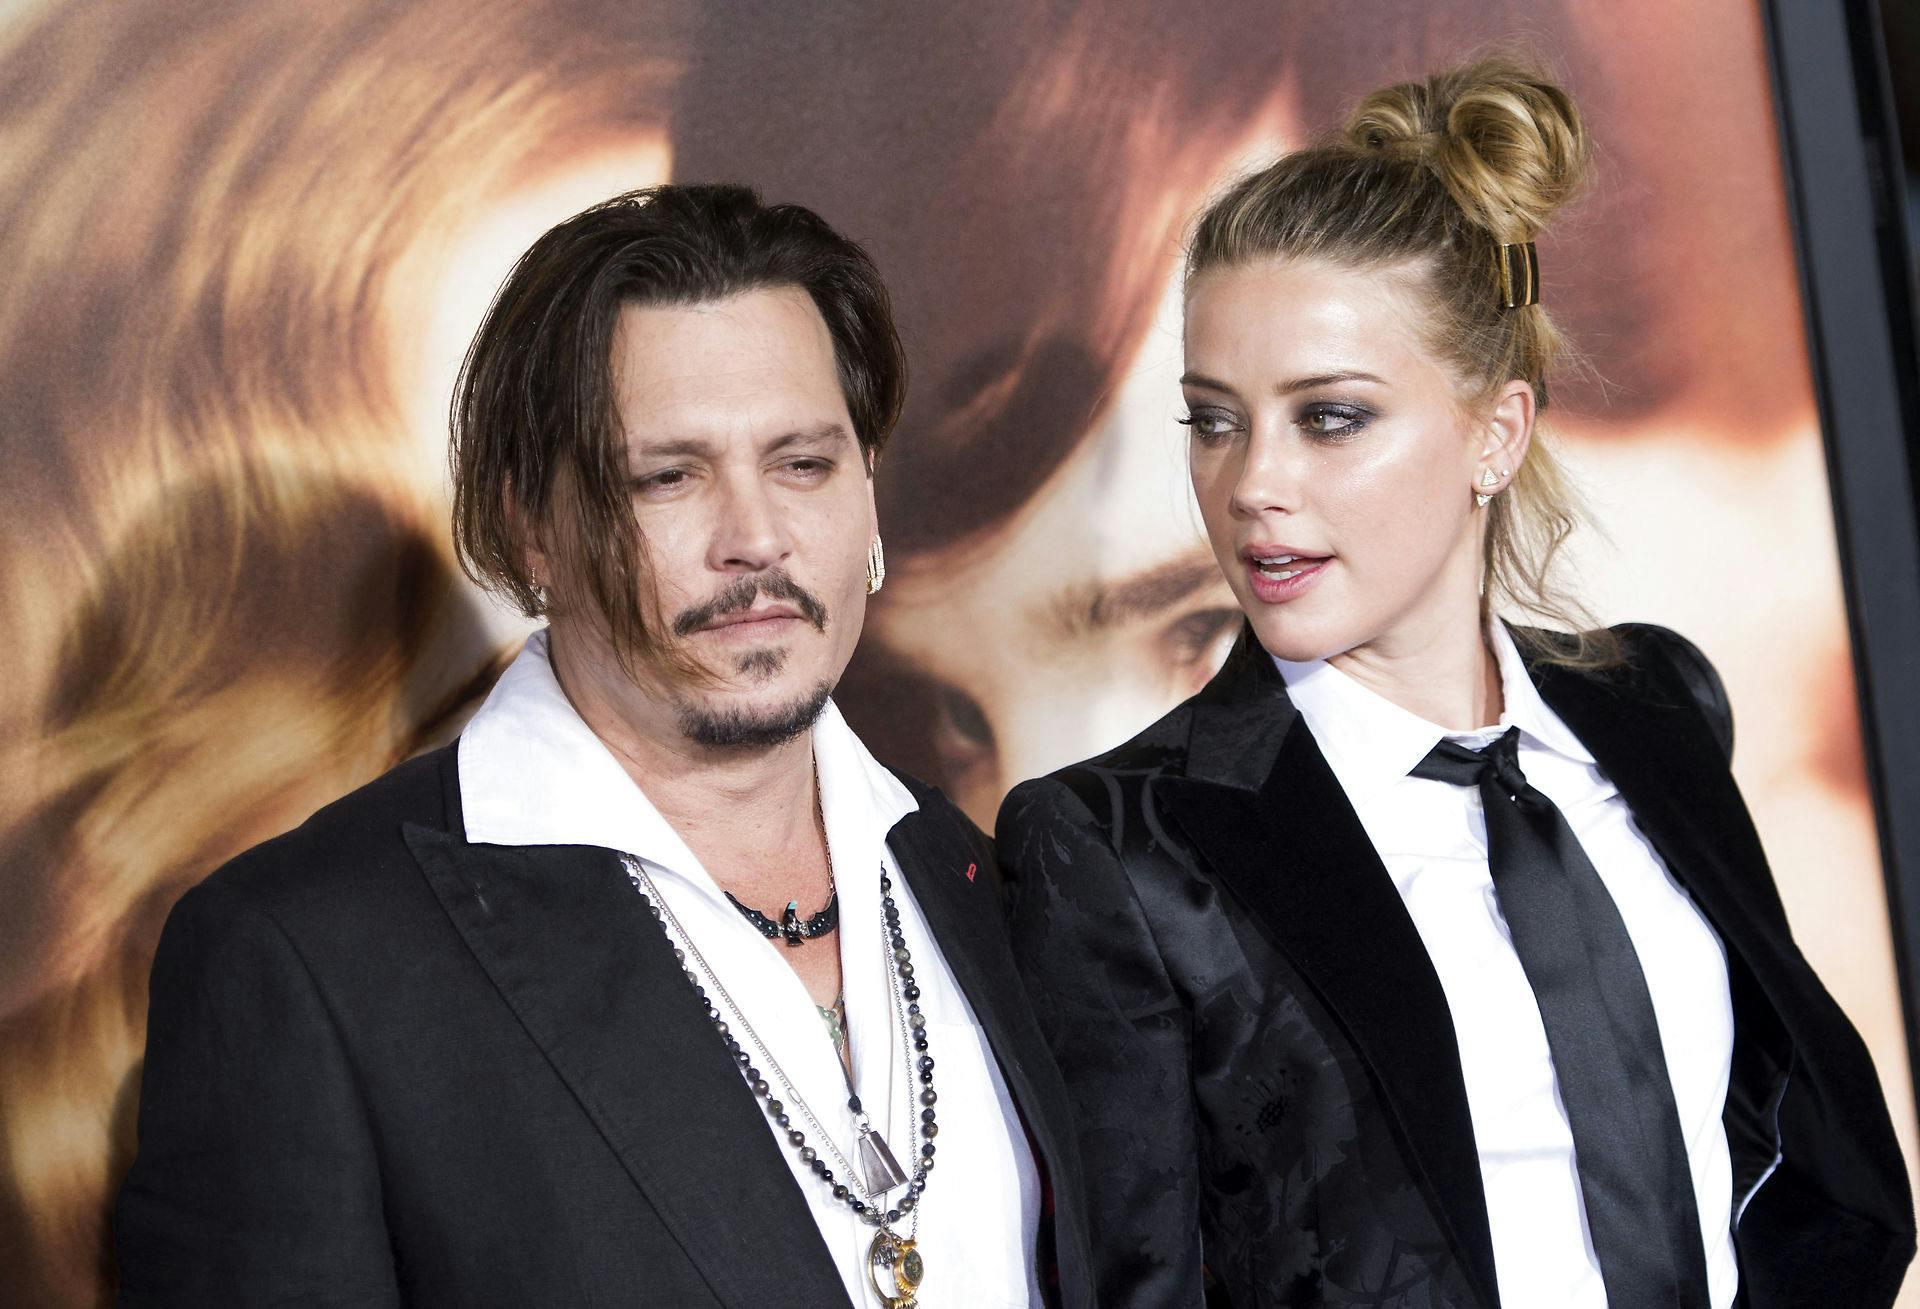 Johnny Depp og Amber Heard sammen til premieren på "The Danish Girl" i Los Angeles i november 2015. Ikke lang tid efter gik parret fra hinanden.
